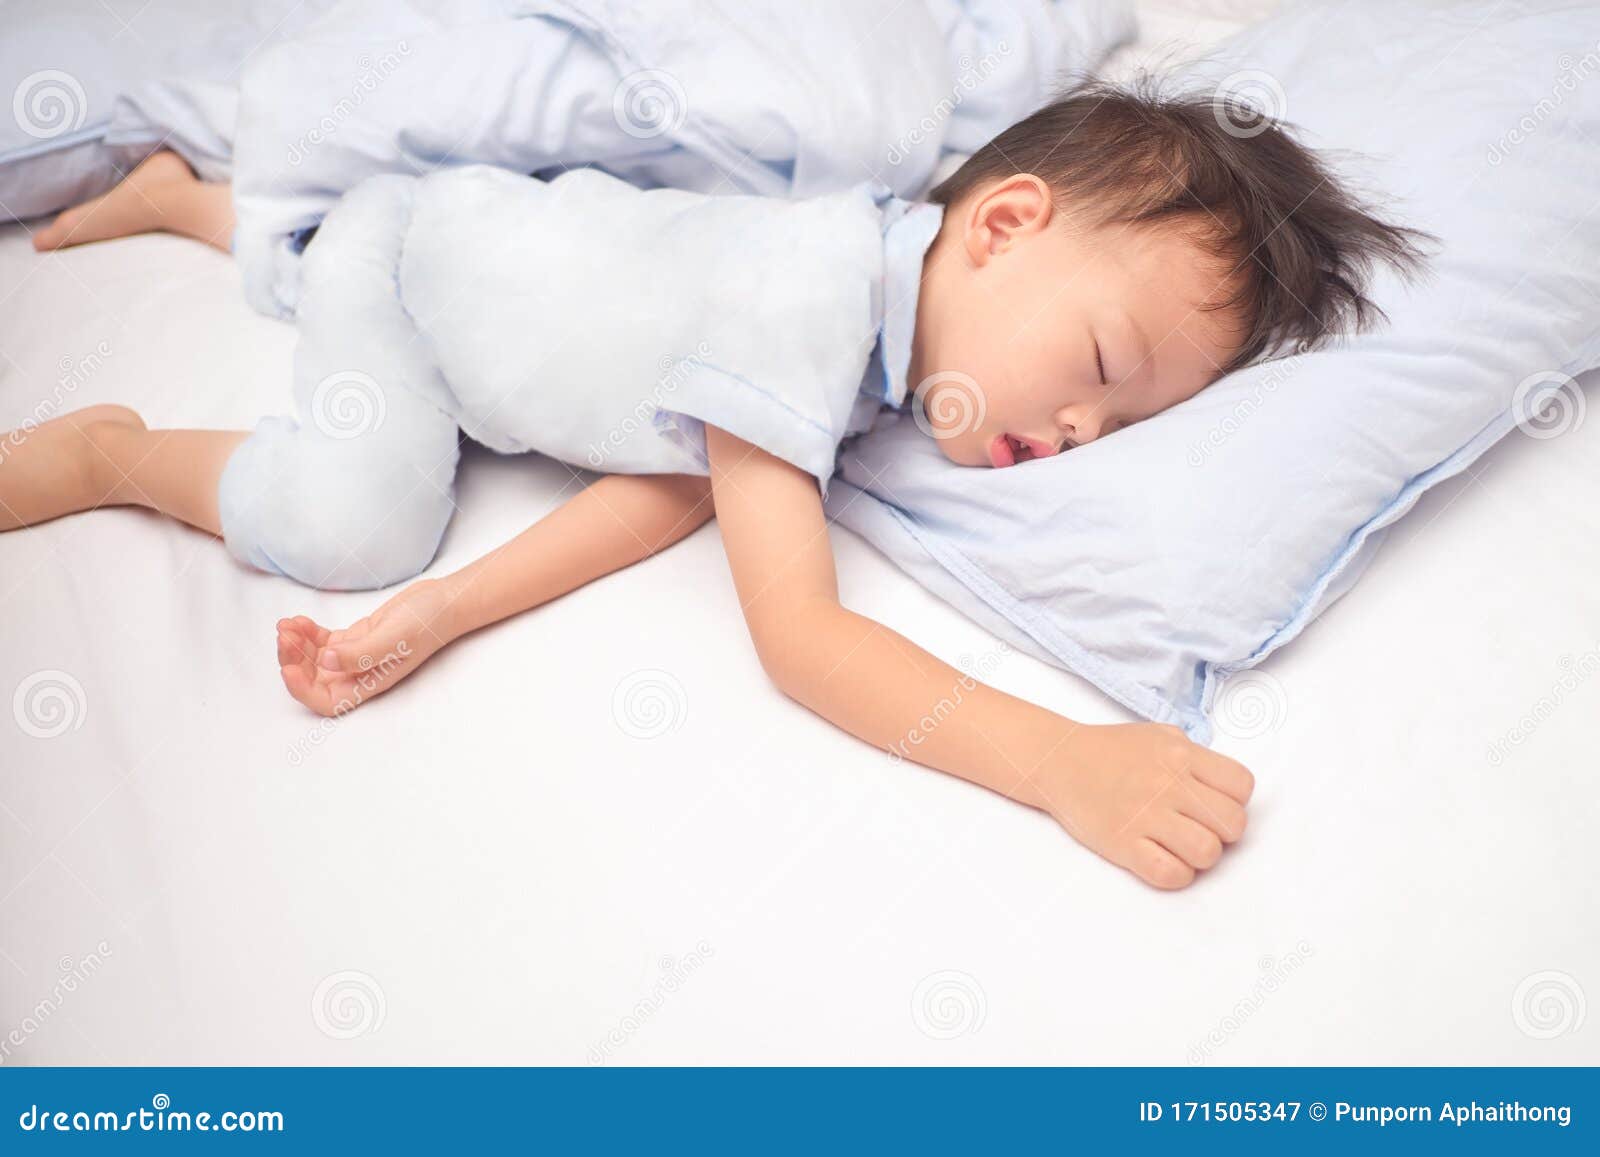 Bambino Asiatico Di 3 - 4 Anni, Bambino Di Pajama, Dorme / Fa Un Pisolino  Su Un Cuscino Blu a Letto Immagine Stock - Immagine di carino, ragazzo:  171505347